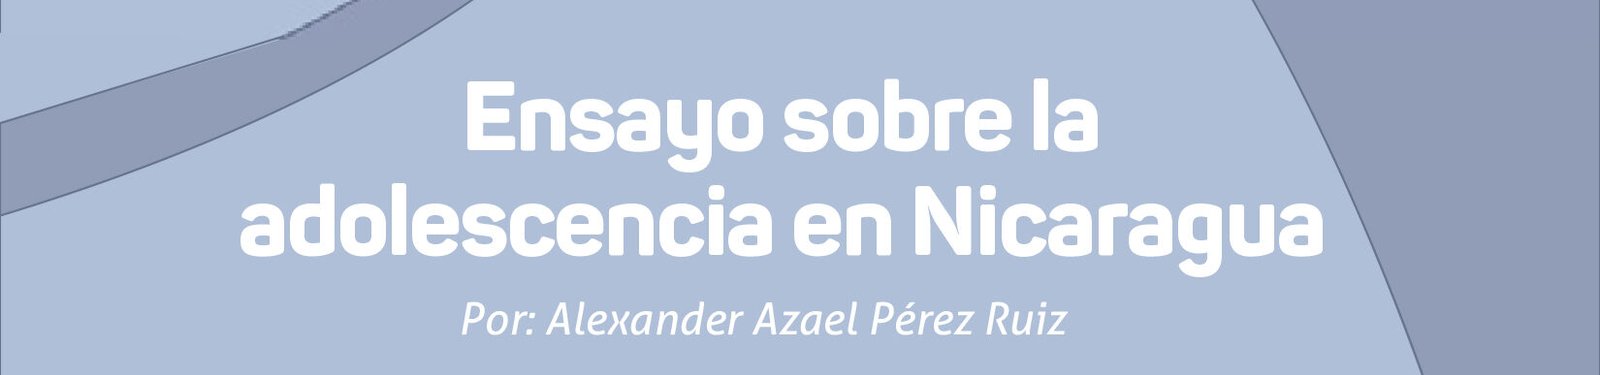 Ensayo sobre la adolescencia en Nicaragua